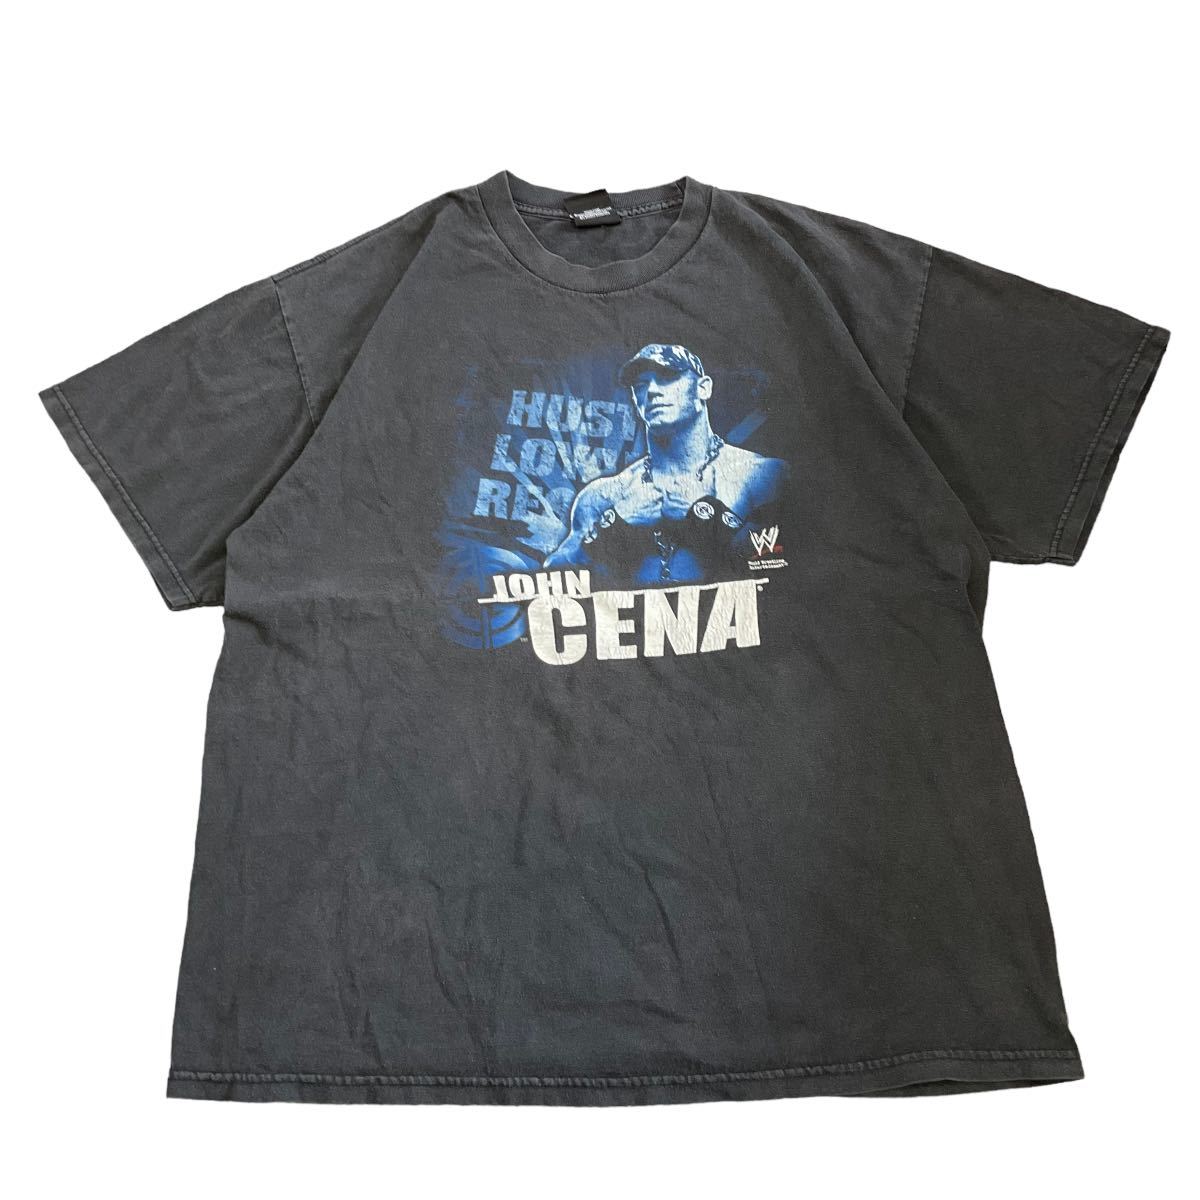 00s JOHN CENA ジョン・シナ Tシャツ WWE 2007年製 ブラック フォトプリント プロレス 格闘技 アメプロ WCW WWF_画像1